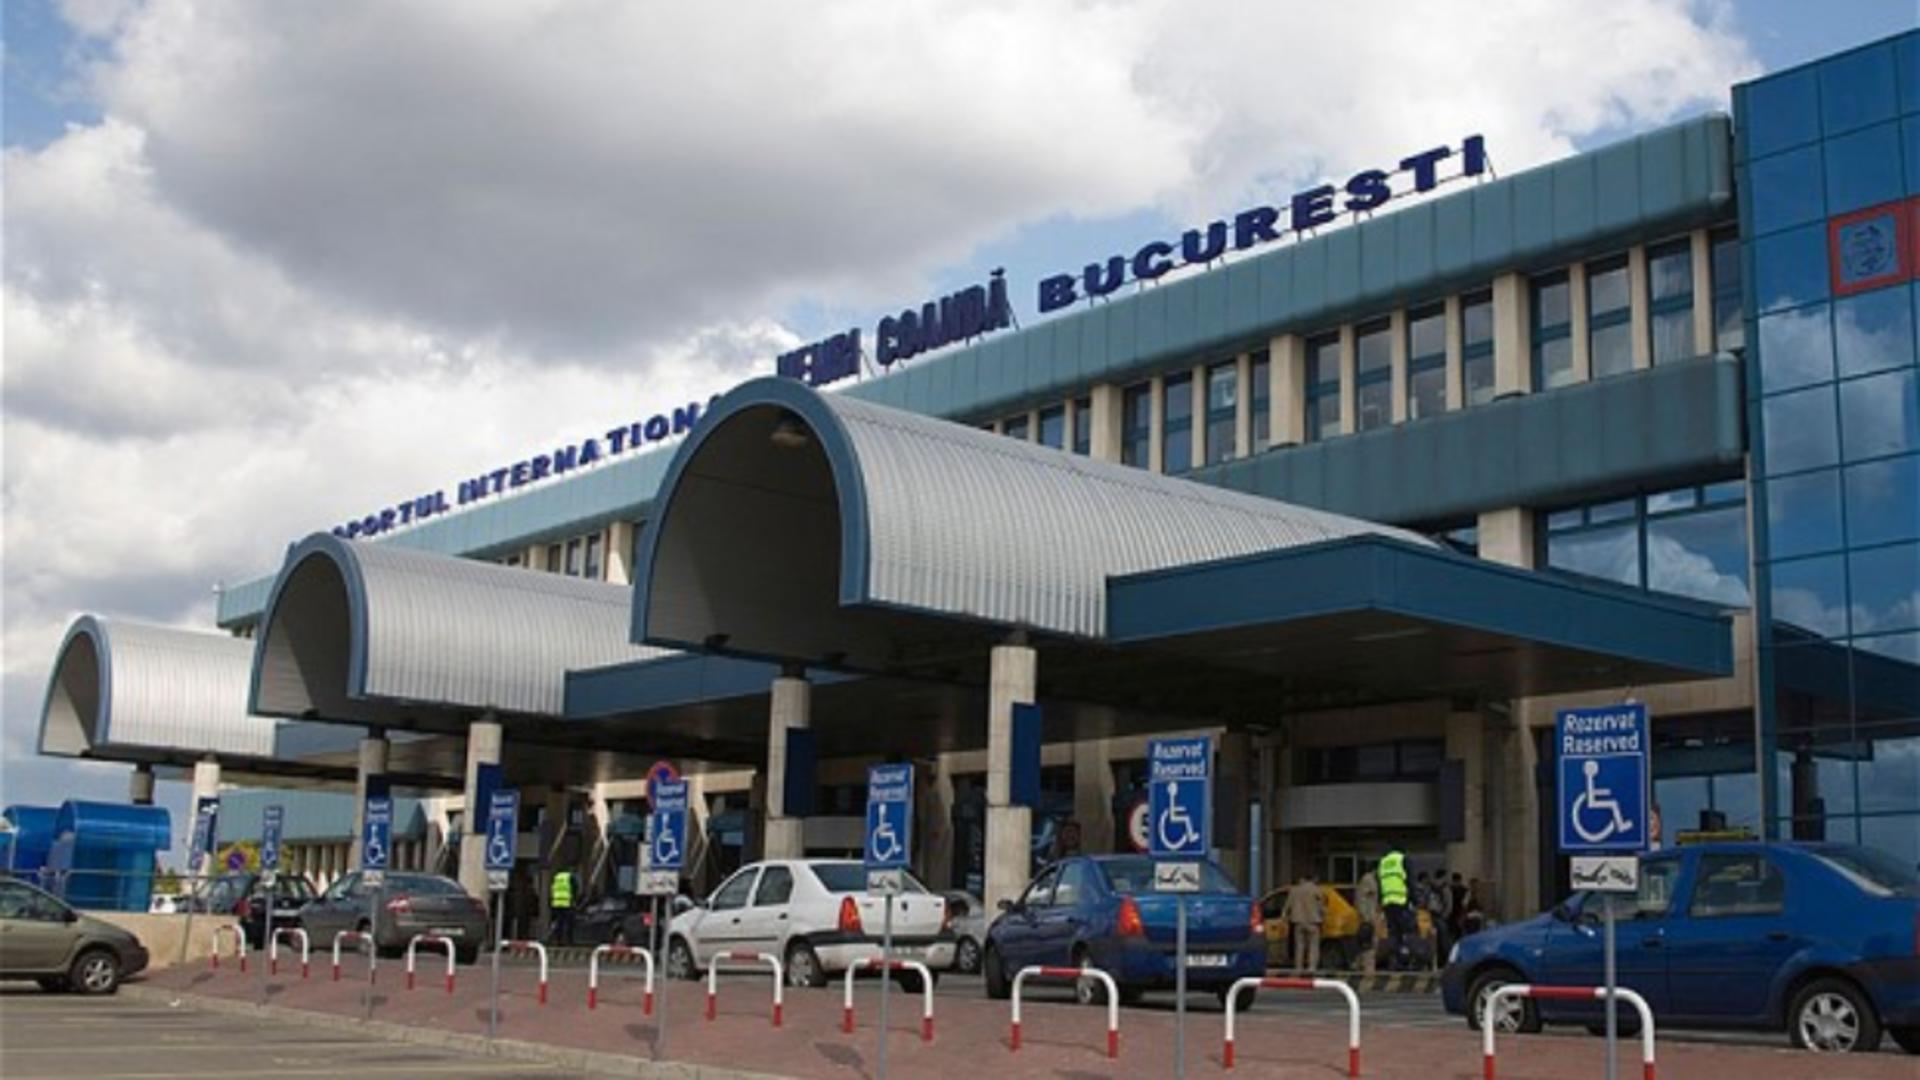 Aeroportul Internaţional Henri Coandă, Bucureşti - Otopeni 